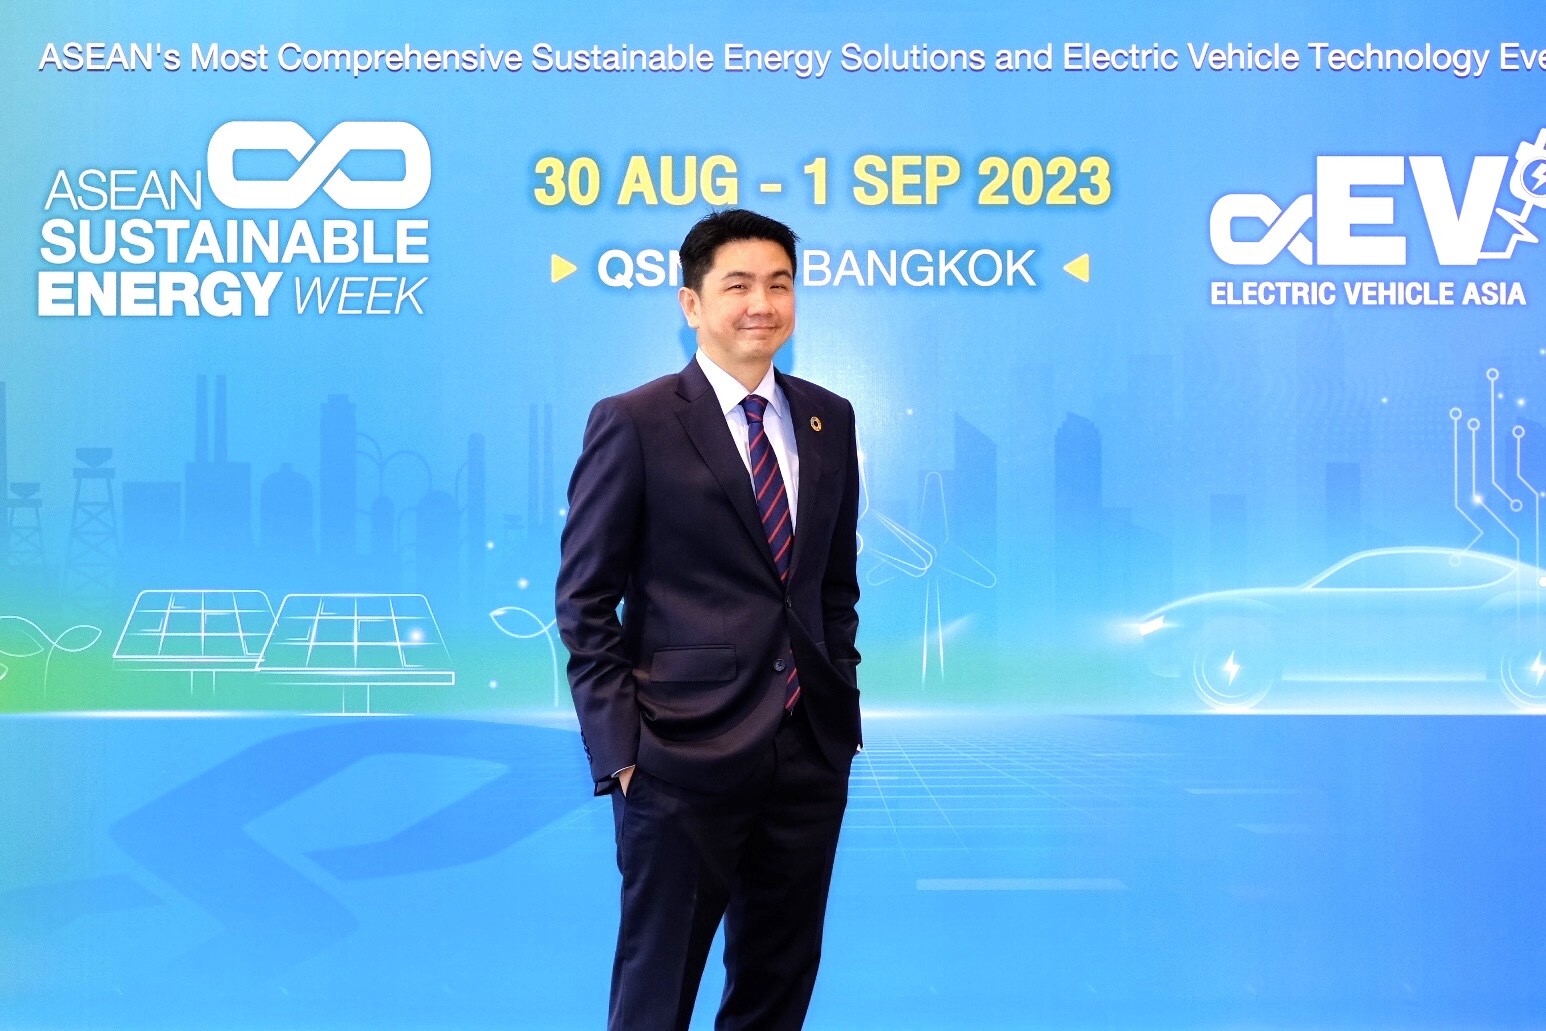 กระทรวงพลังงาน สมาคมยานยนต์ไฟฟ้า และ อินฟอร์มา มาร์เก็ตส์ นำทัพภาครัฐ - เอกชน จัดงาน ASEAN Sustainable Energy Week และ Electric Vehicle Asia 2023